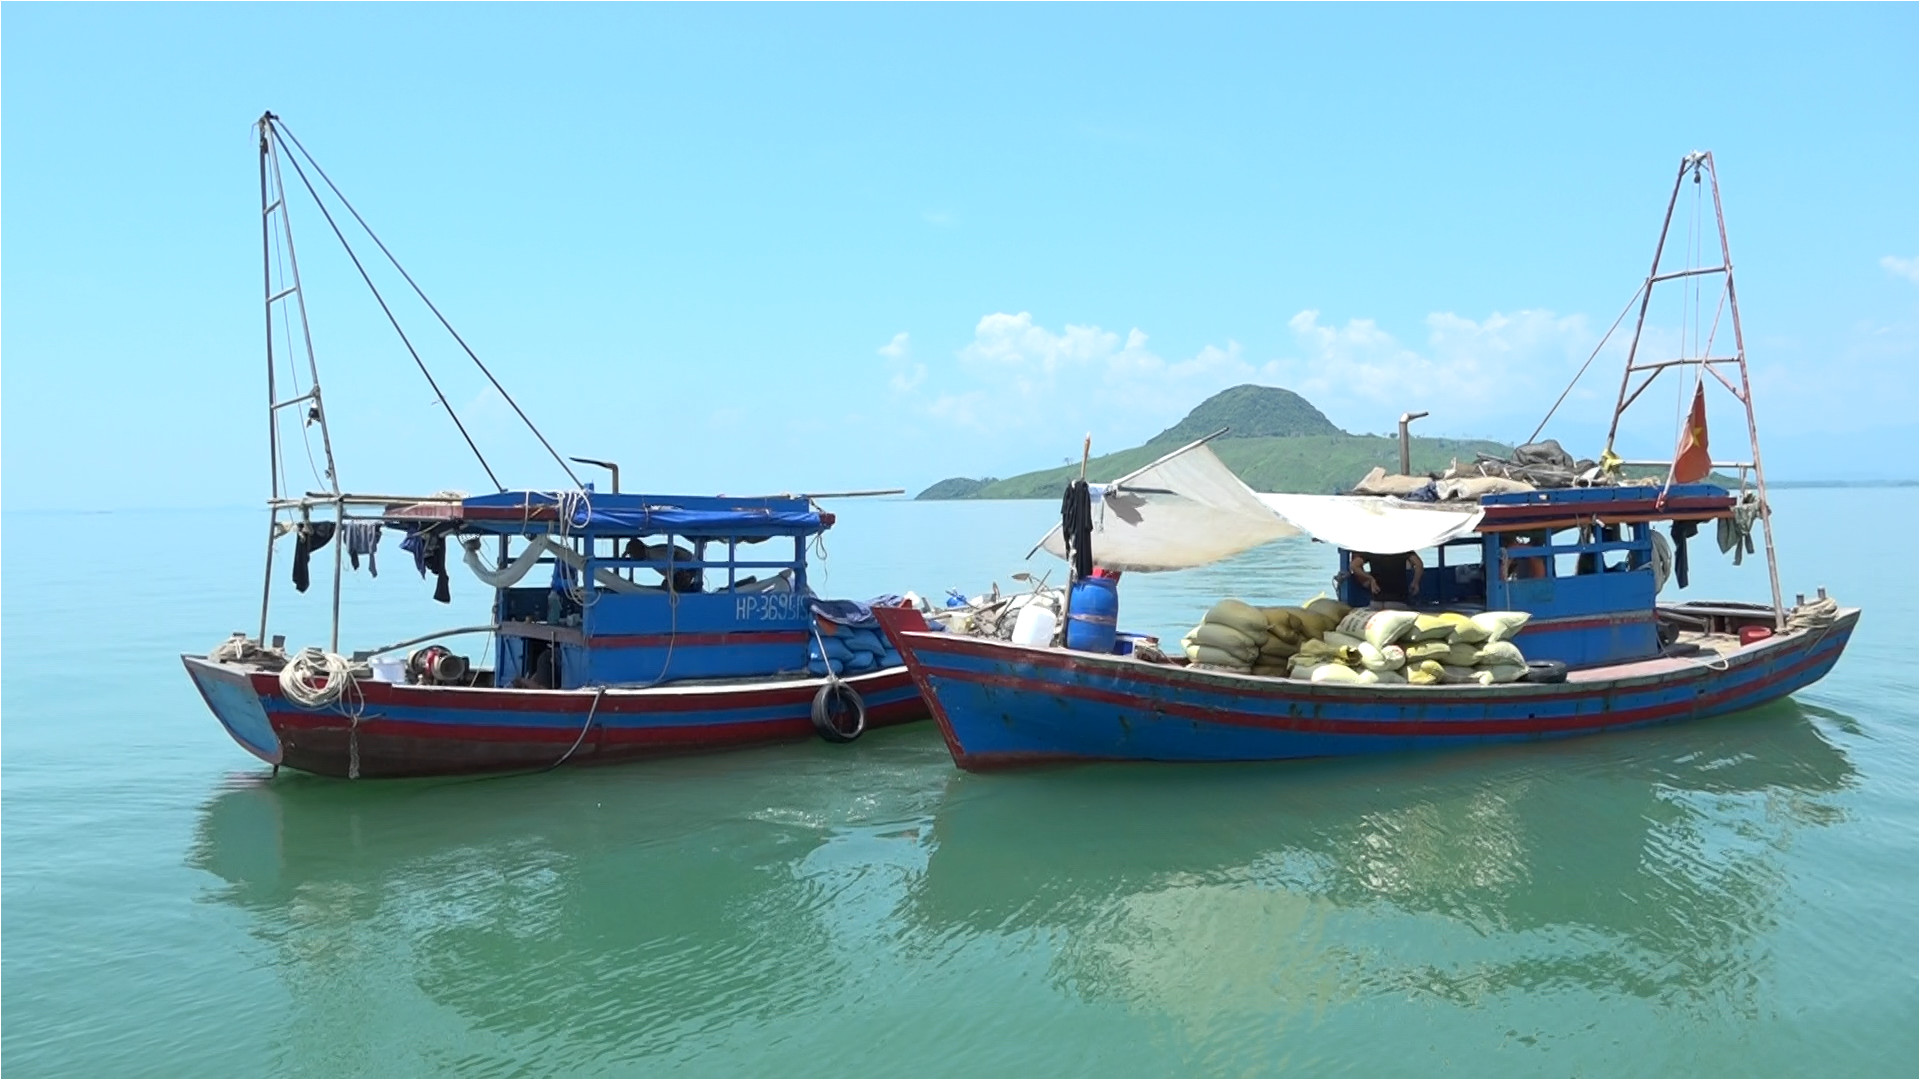 Ngư dân đánh bắt thủy sản trên vùng biển do huyện Hải Hà quản lý. Ảnh: Nguyễn Hằng (Trung tâm TT-VH Hải Hà)